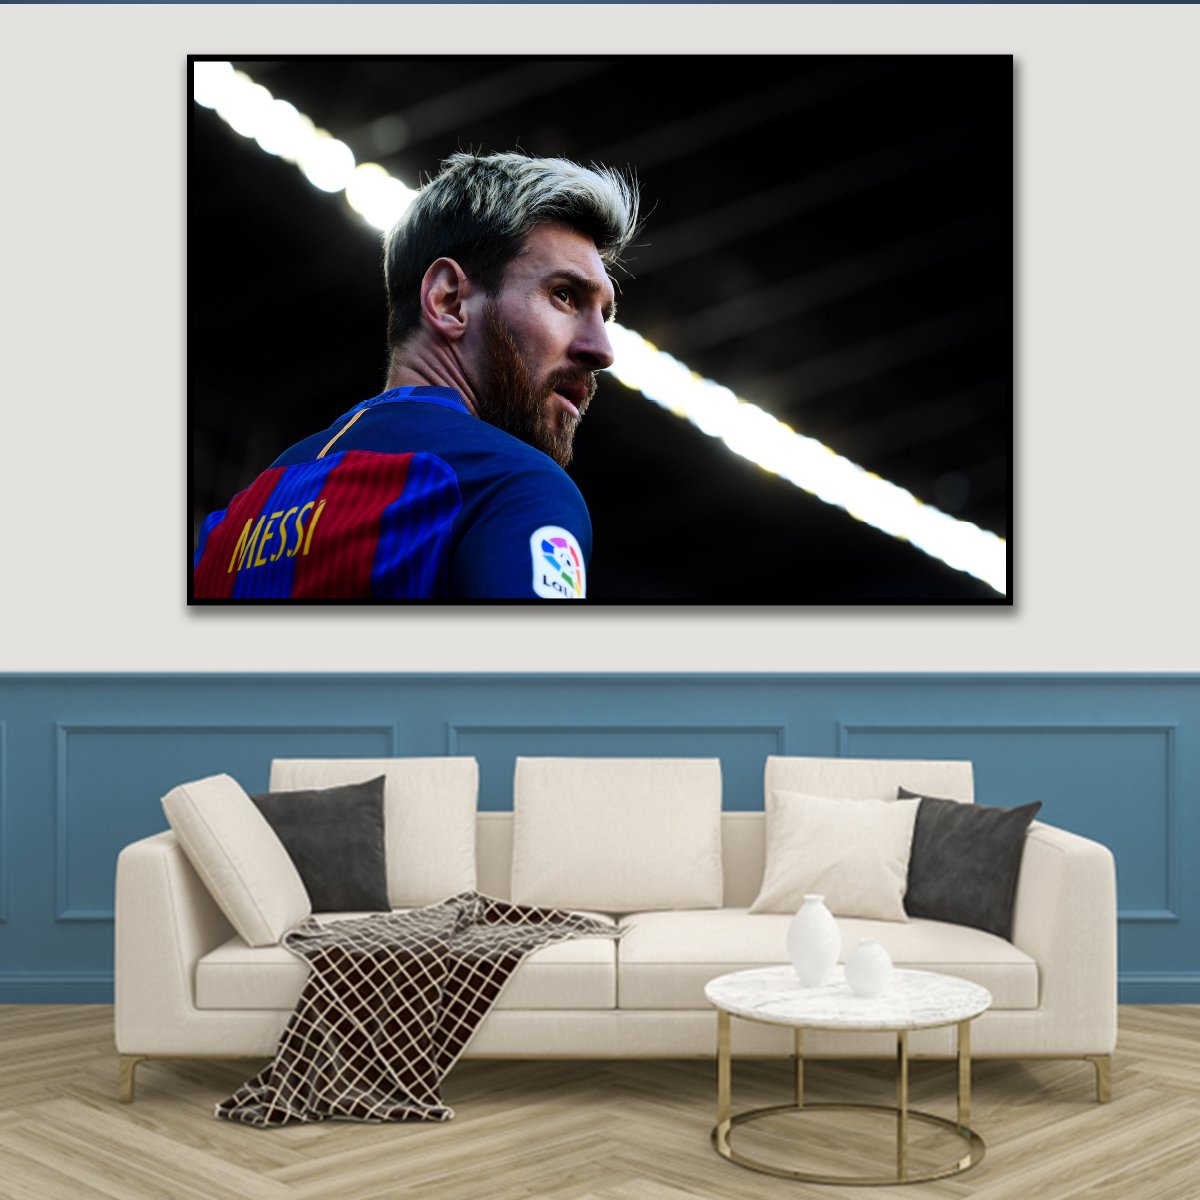 Tranh treo tường cầu thủ Messi 3